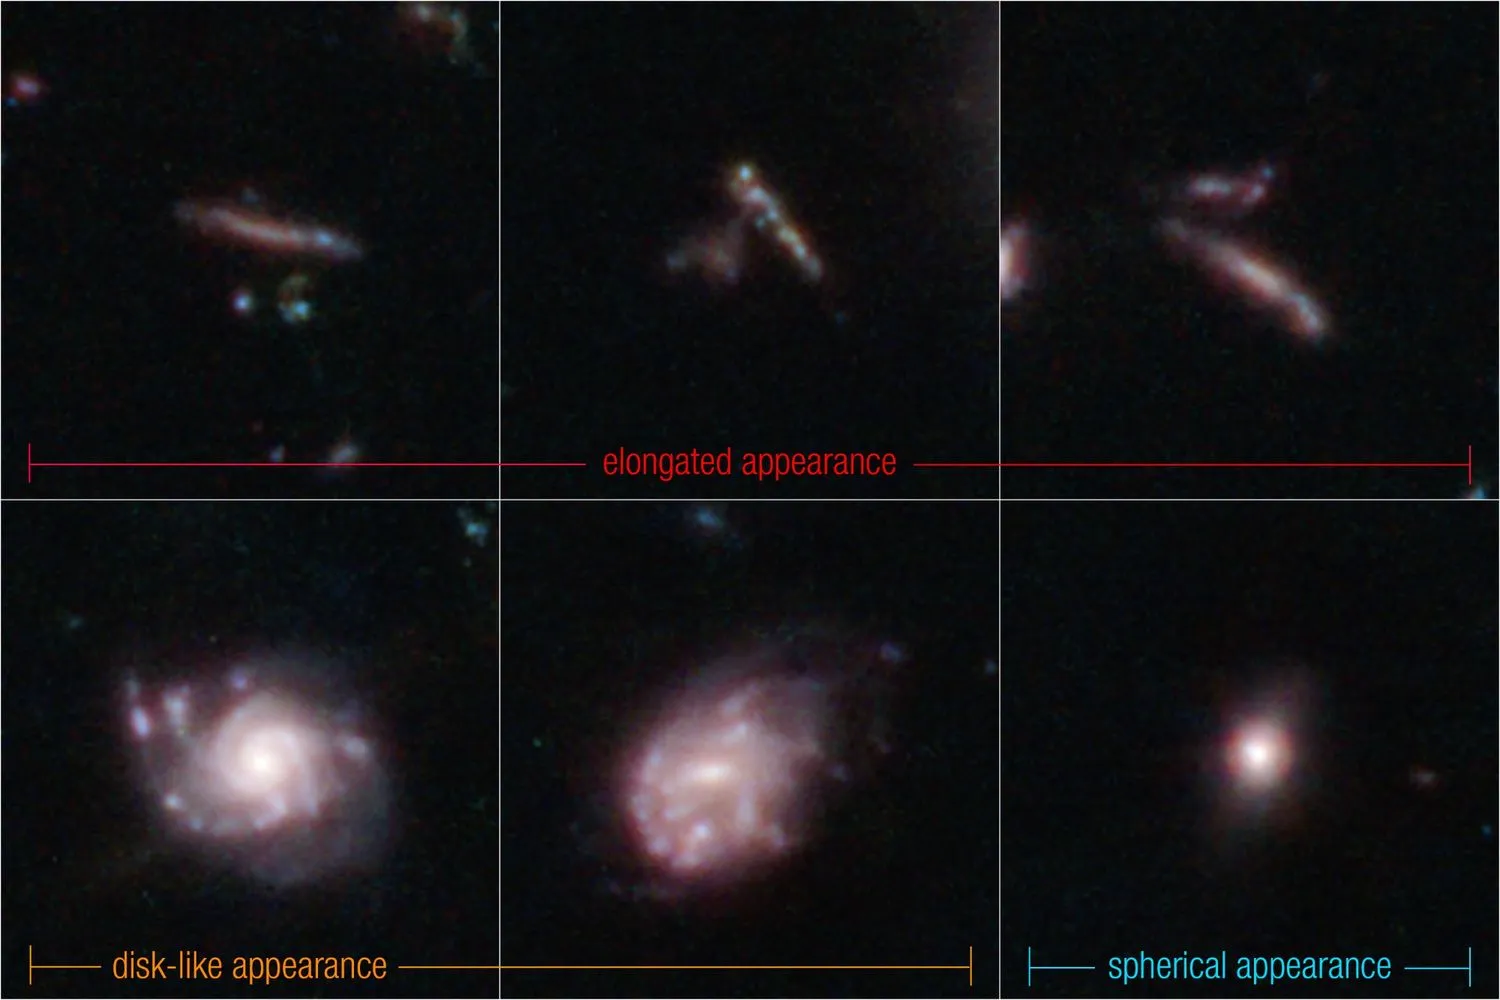 sechs Bilder, die verschiedene Formen von hellen Flecken im Weltraum zeigen